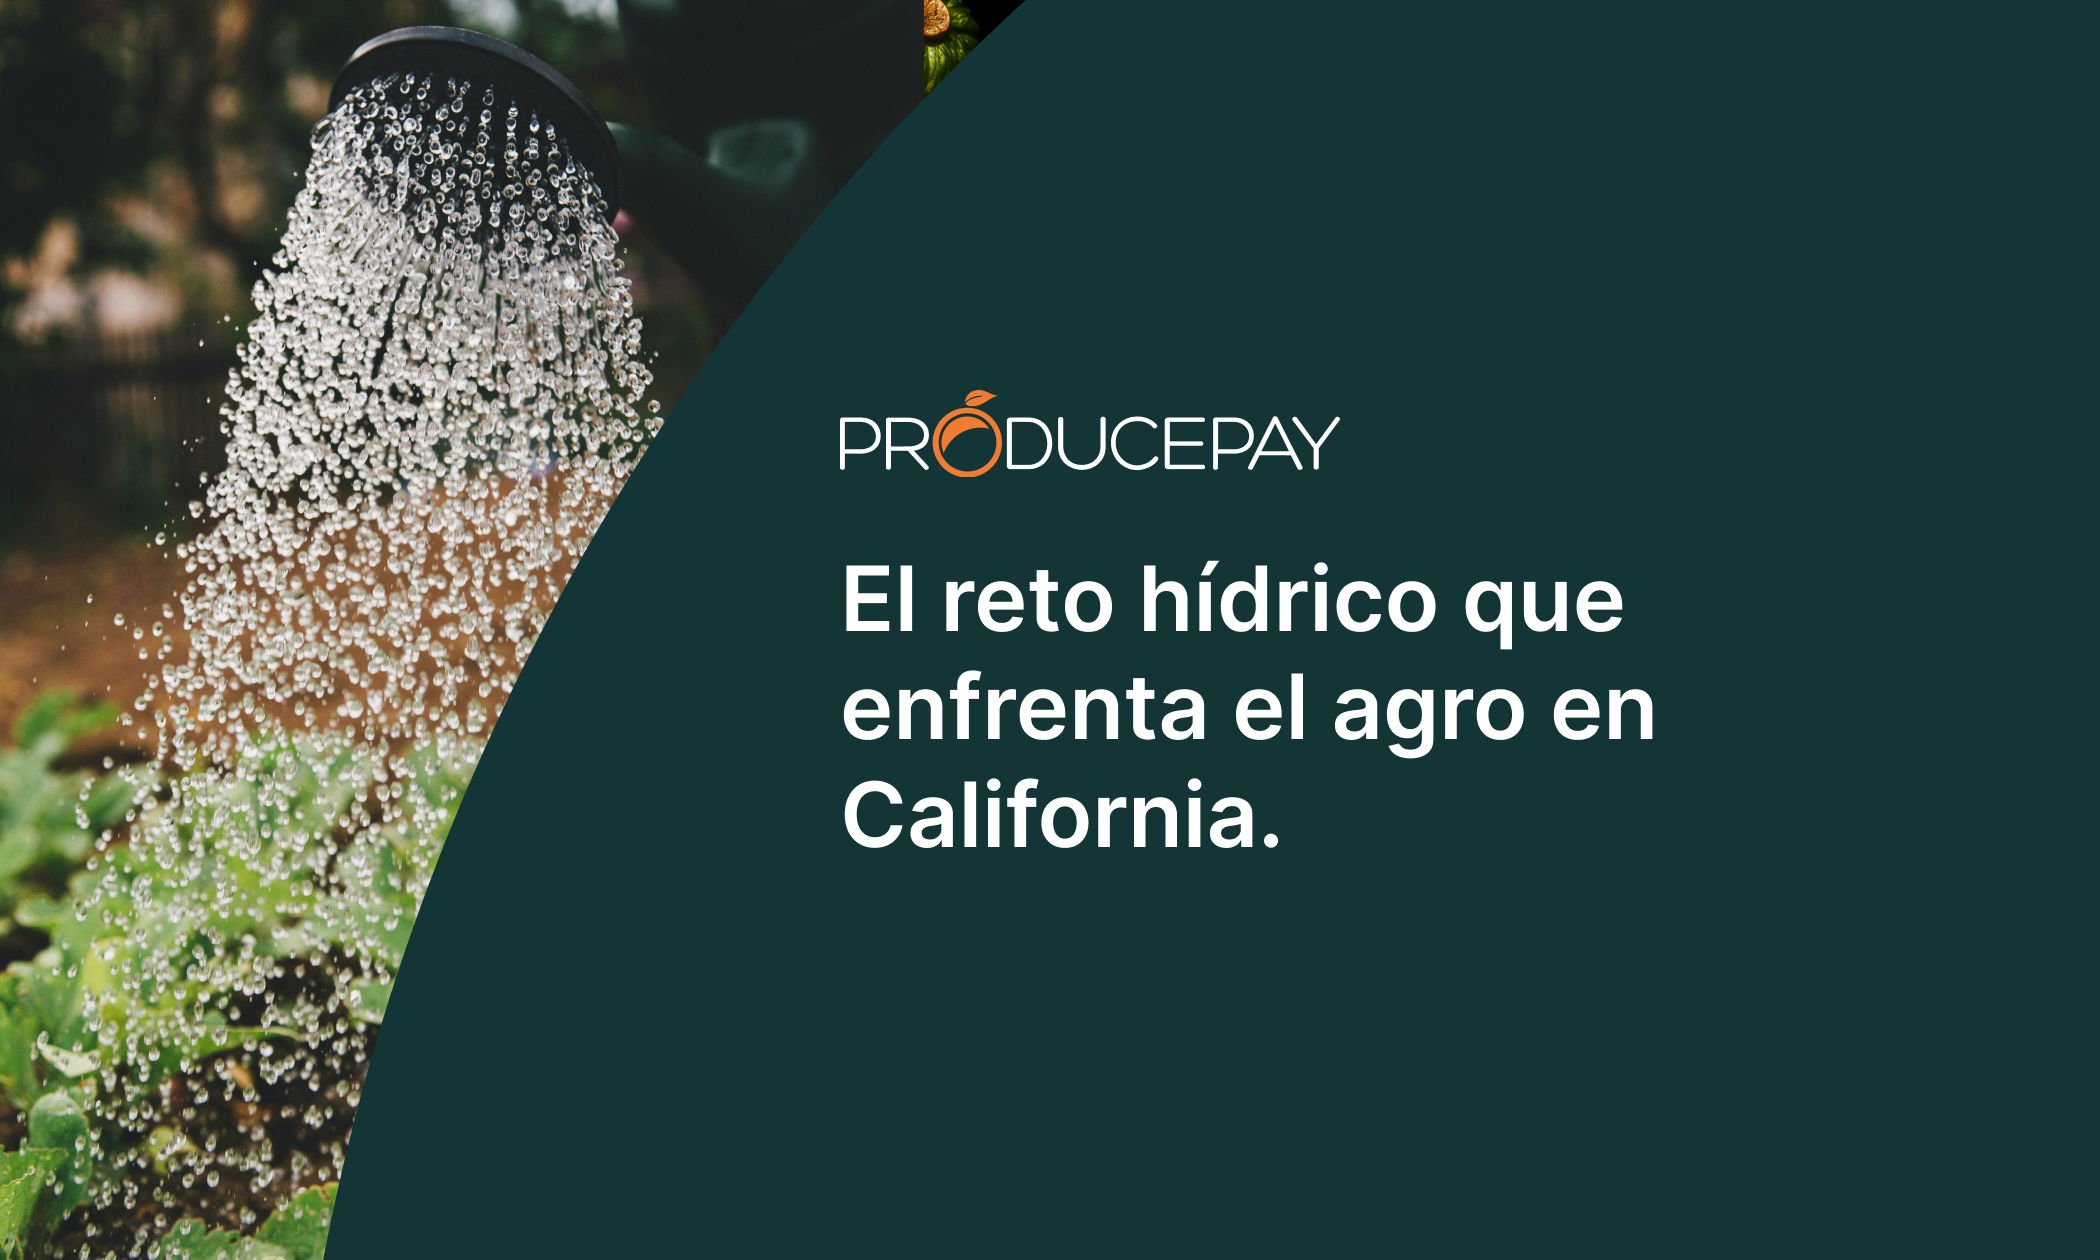 El reto hídrico que enfrenta el agro en California